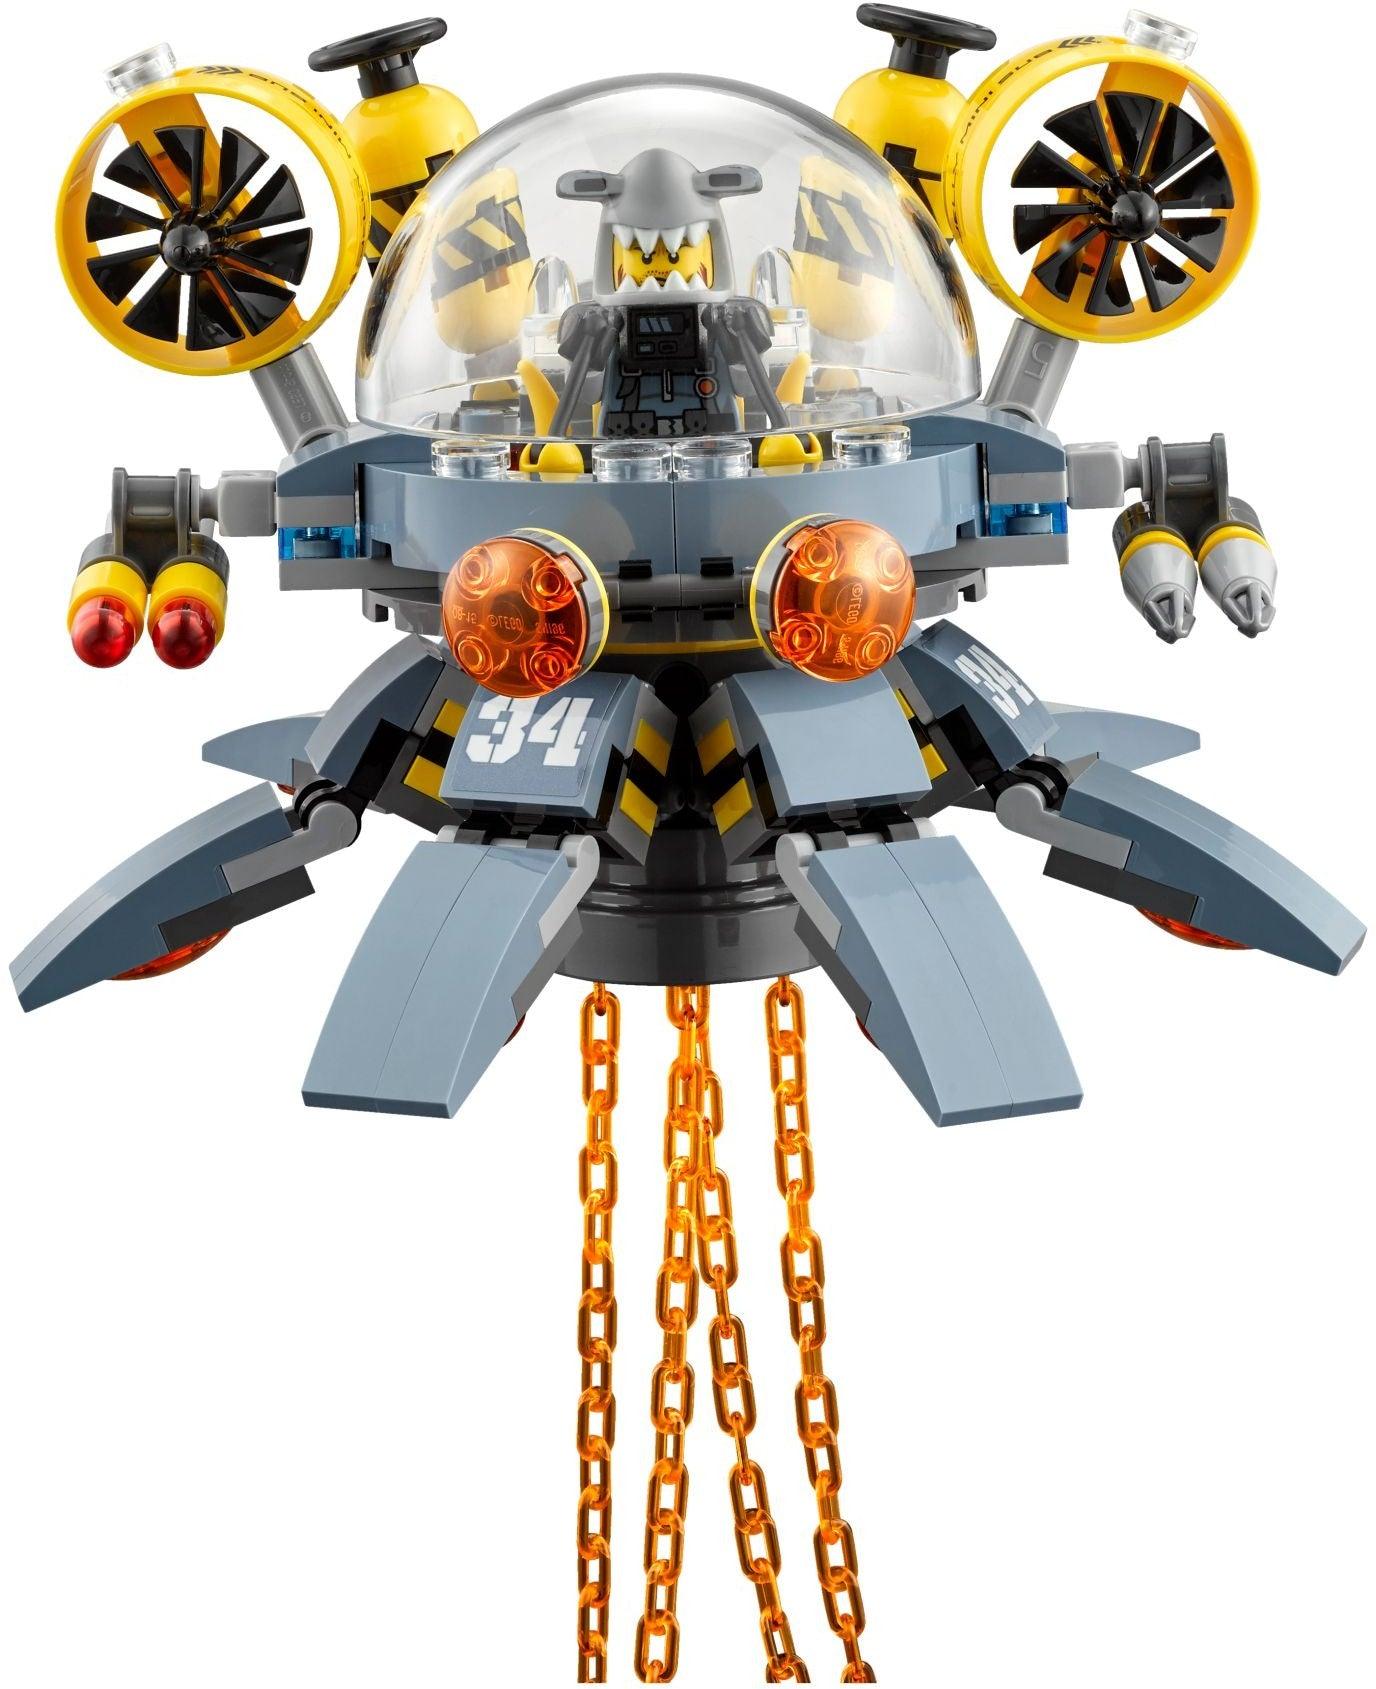 LEGO Vliegende kwal duikboot 70610 Ninjago LEGO NINJAGO @ 2TTOYS LEGO €. 44.99